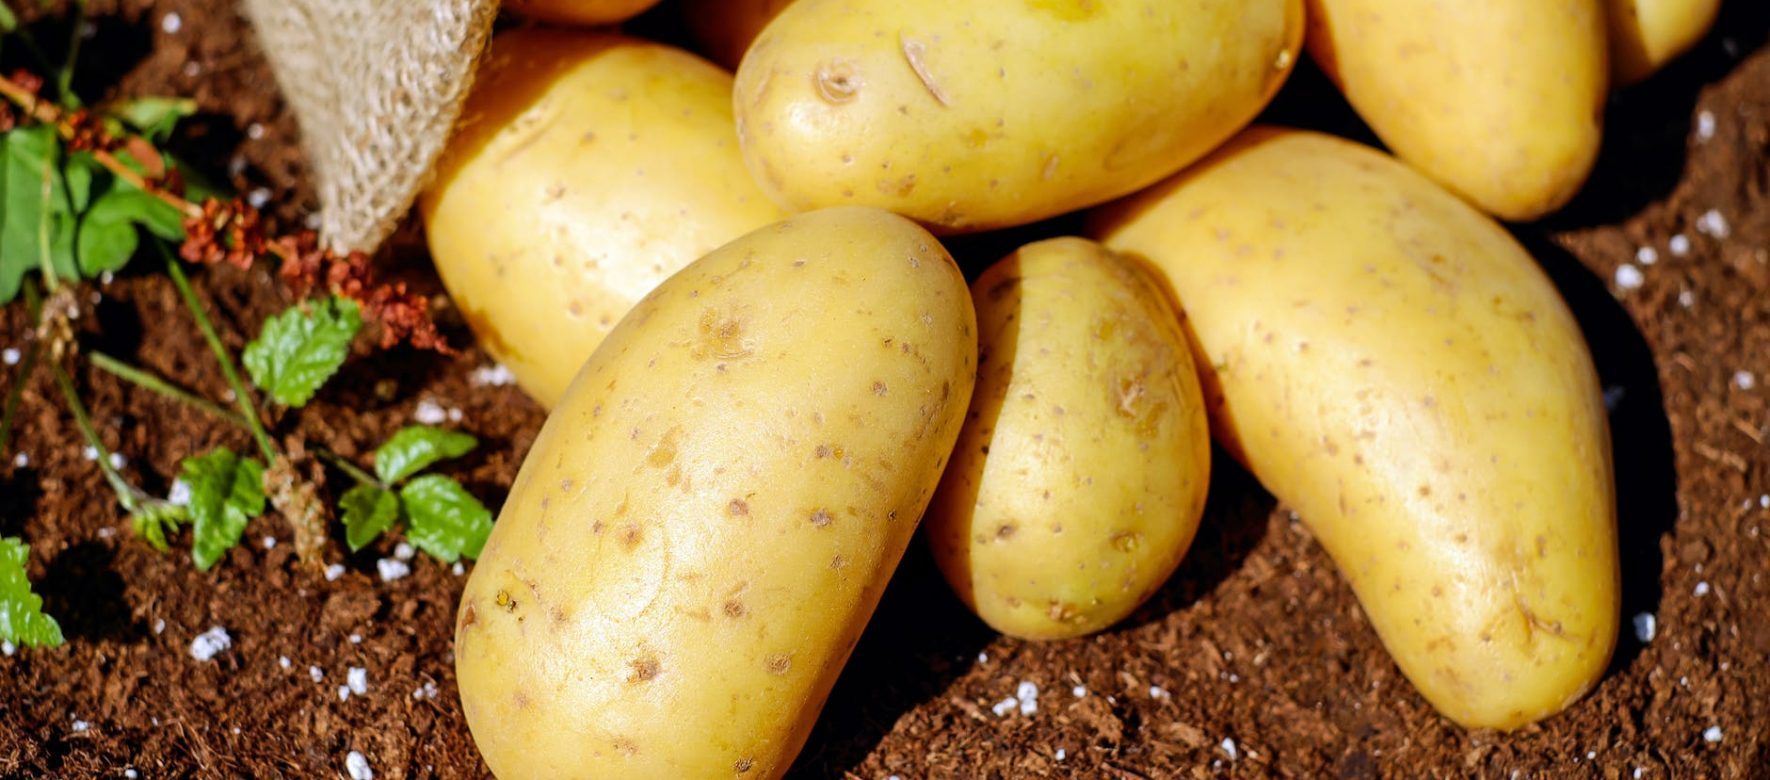 Tunisie : La production de pommes de terre devrait dépasser les 250 000 tonnes durant la période de saison courant de mai à juin, plus de la moitié de la récolte annuelle 1